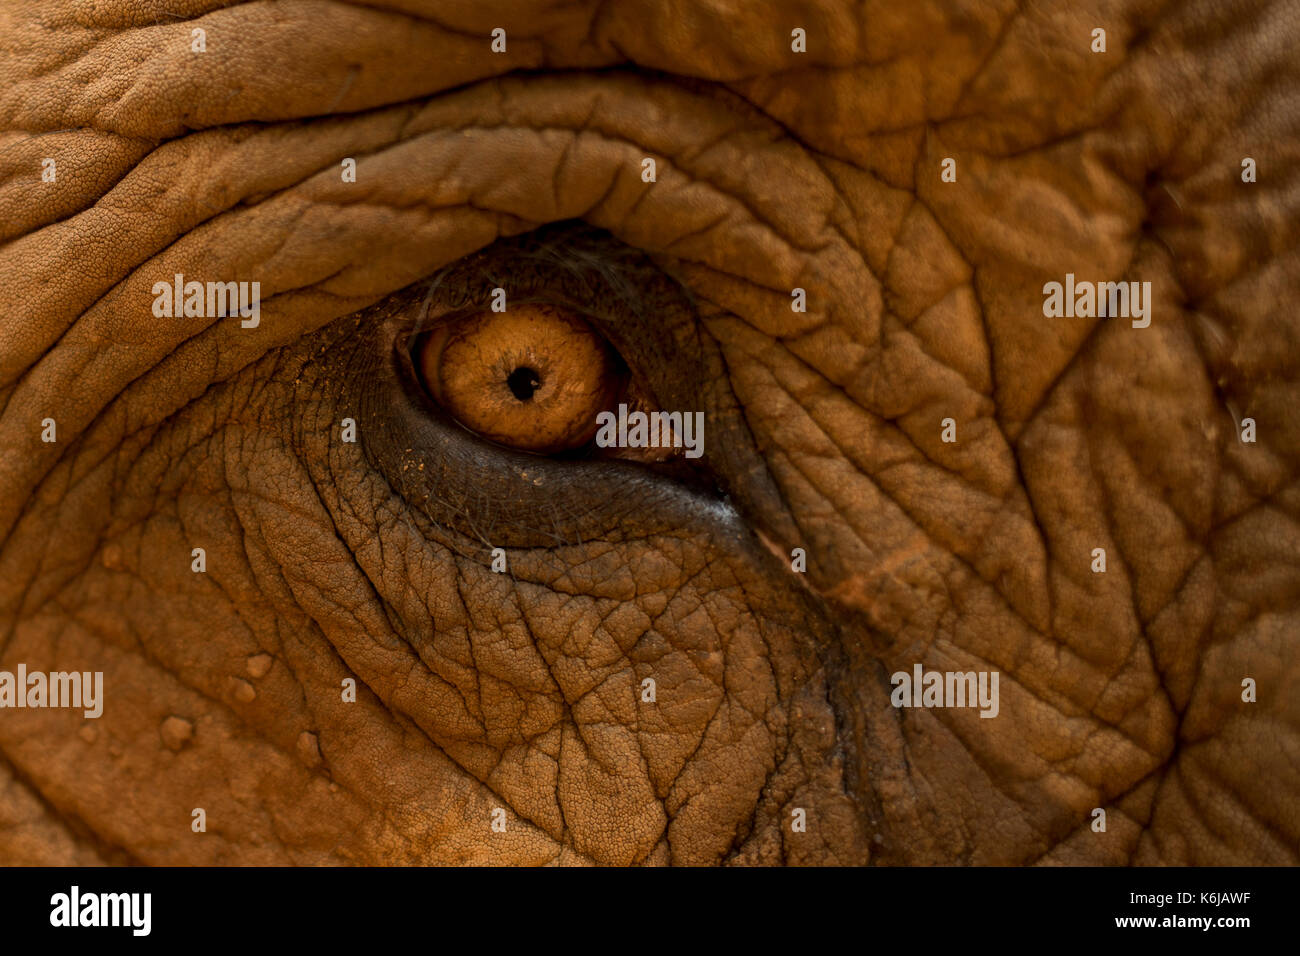 Amazing eye of Asian Elephant (Elephas maximus), Chiang Mai, Thailand Stock Photo